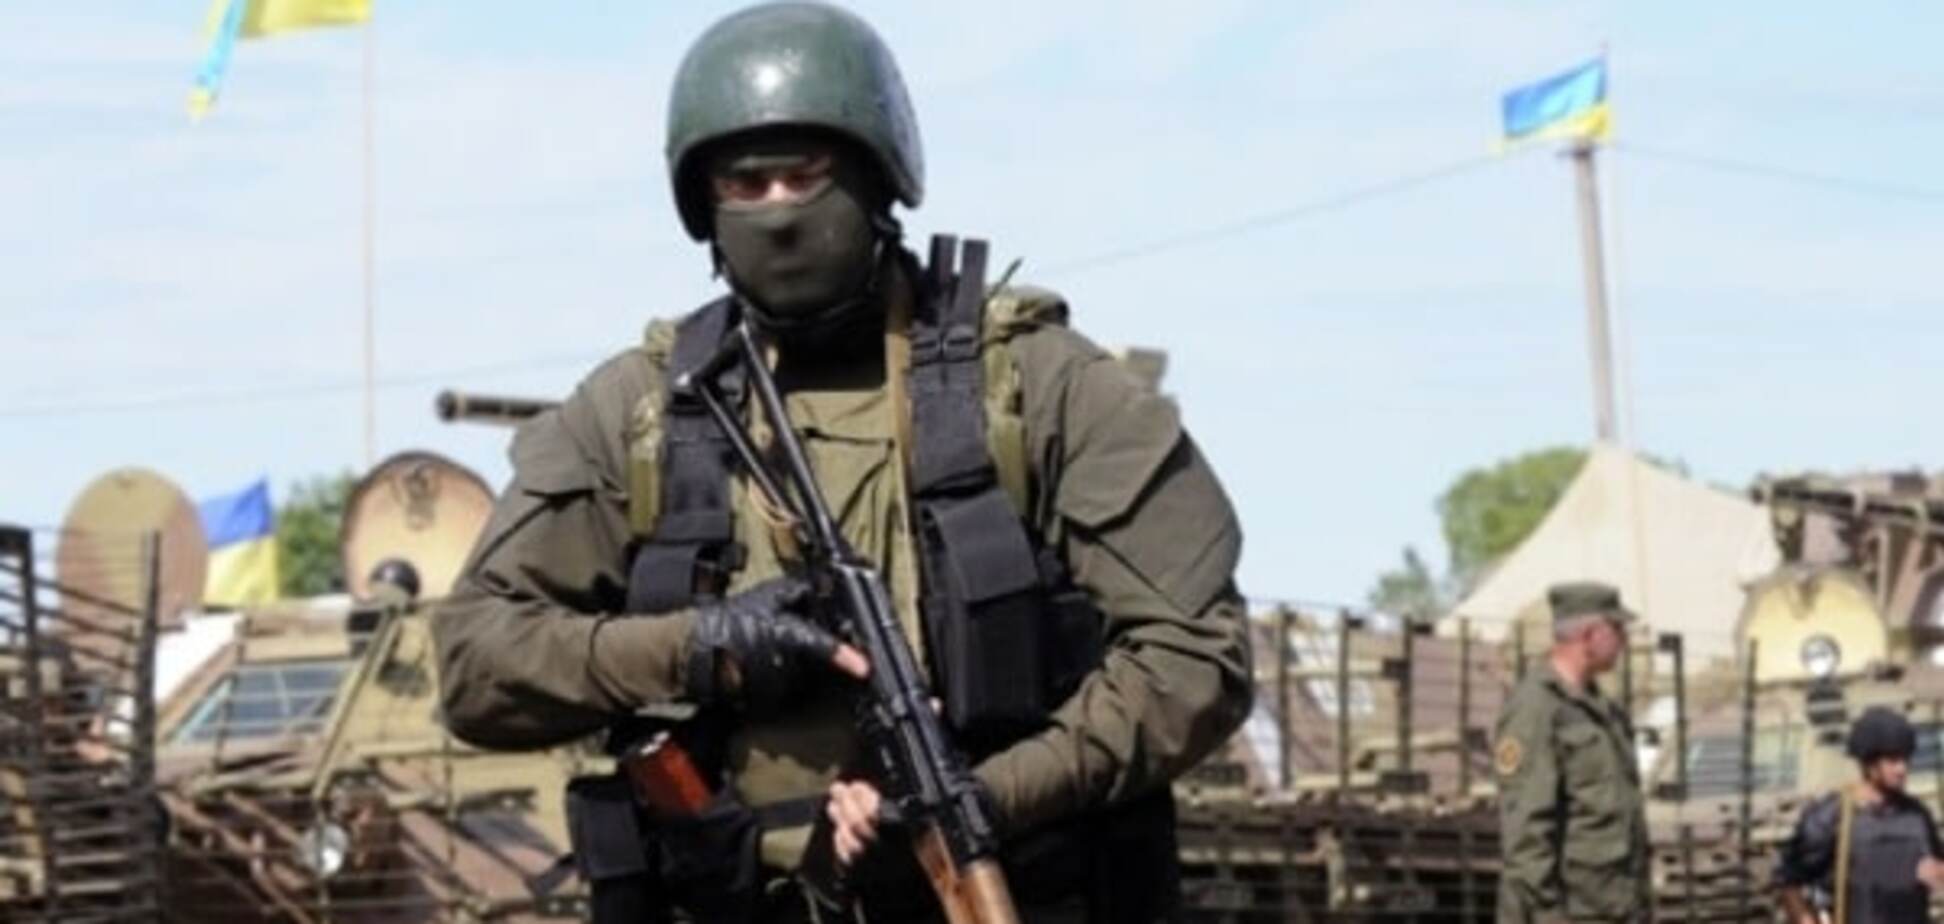 Бої під Авдіївкою: ЗМІ повідомили про загибель українського військового